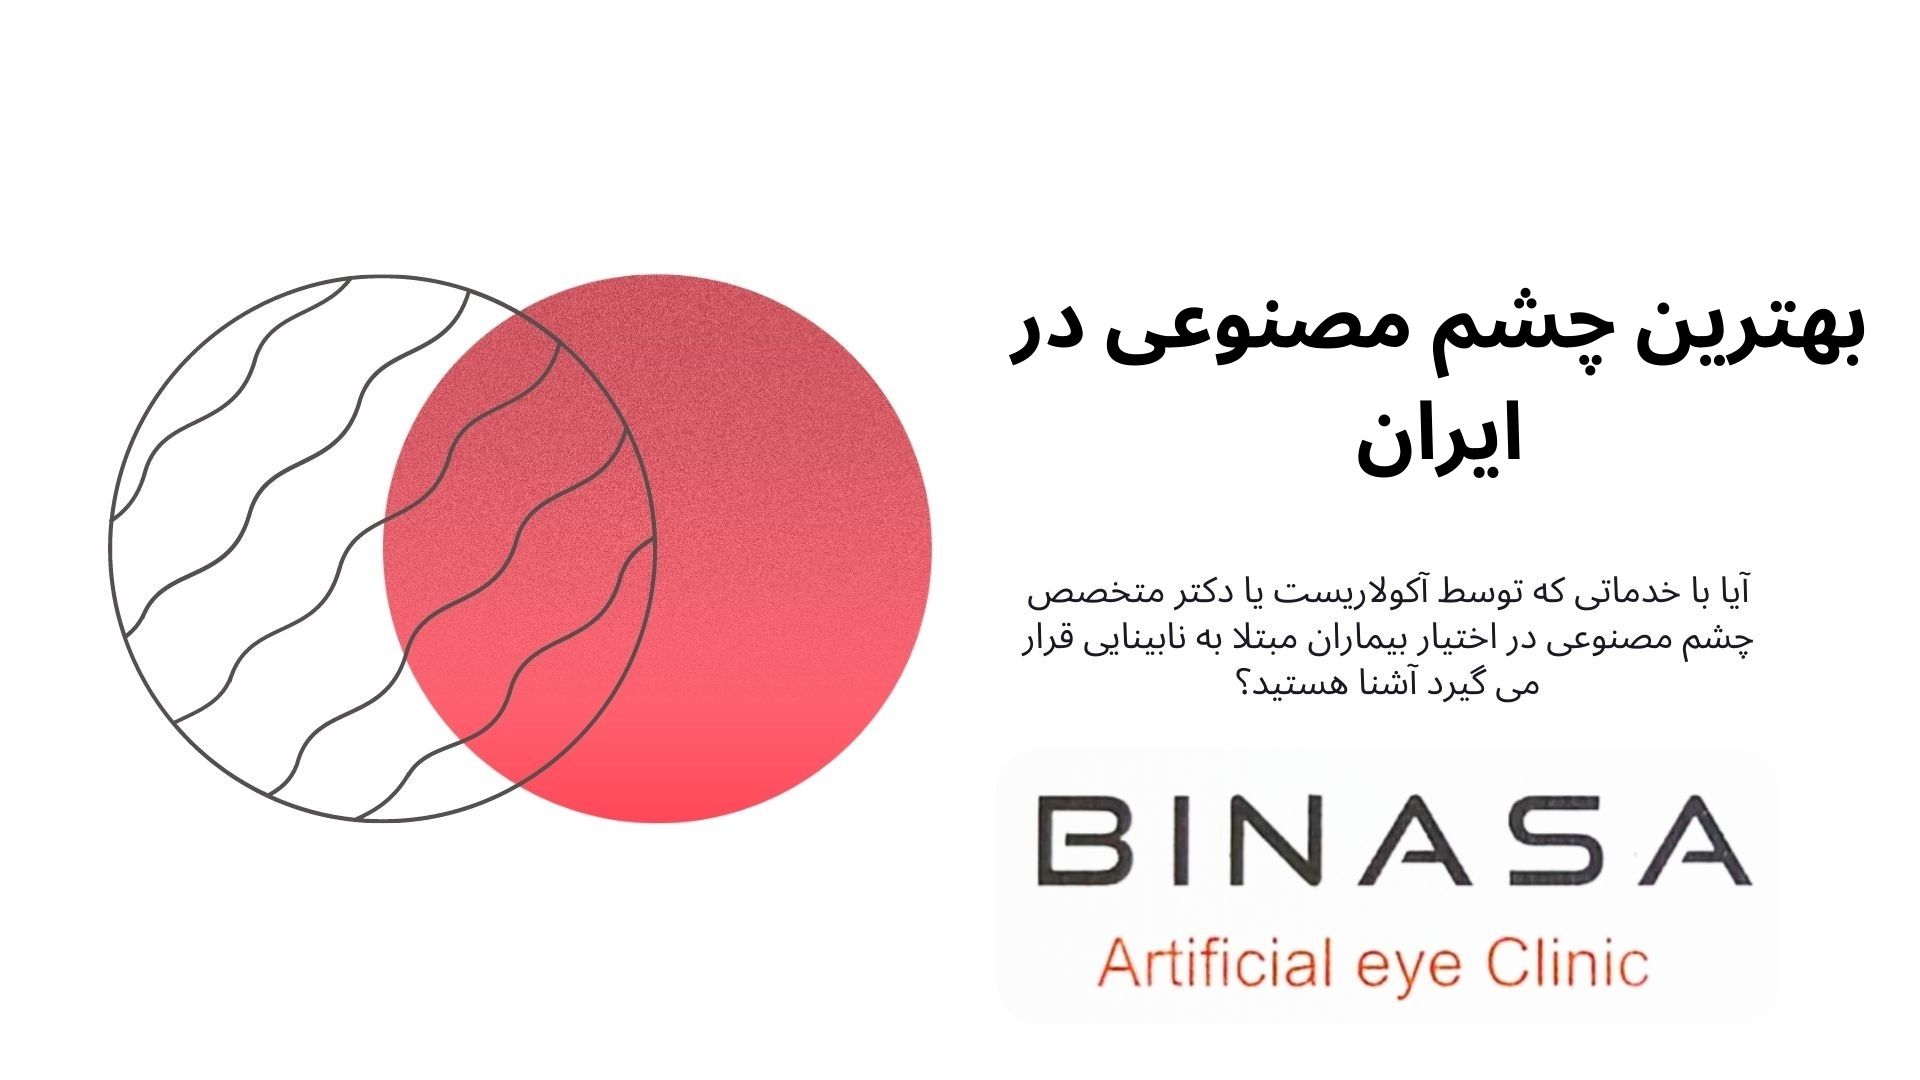 بهترین چشم مصنوعی در ایران